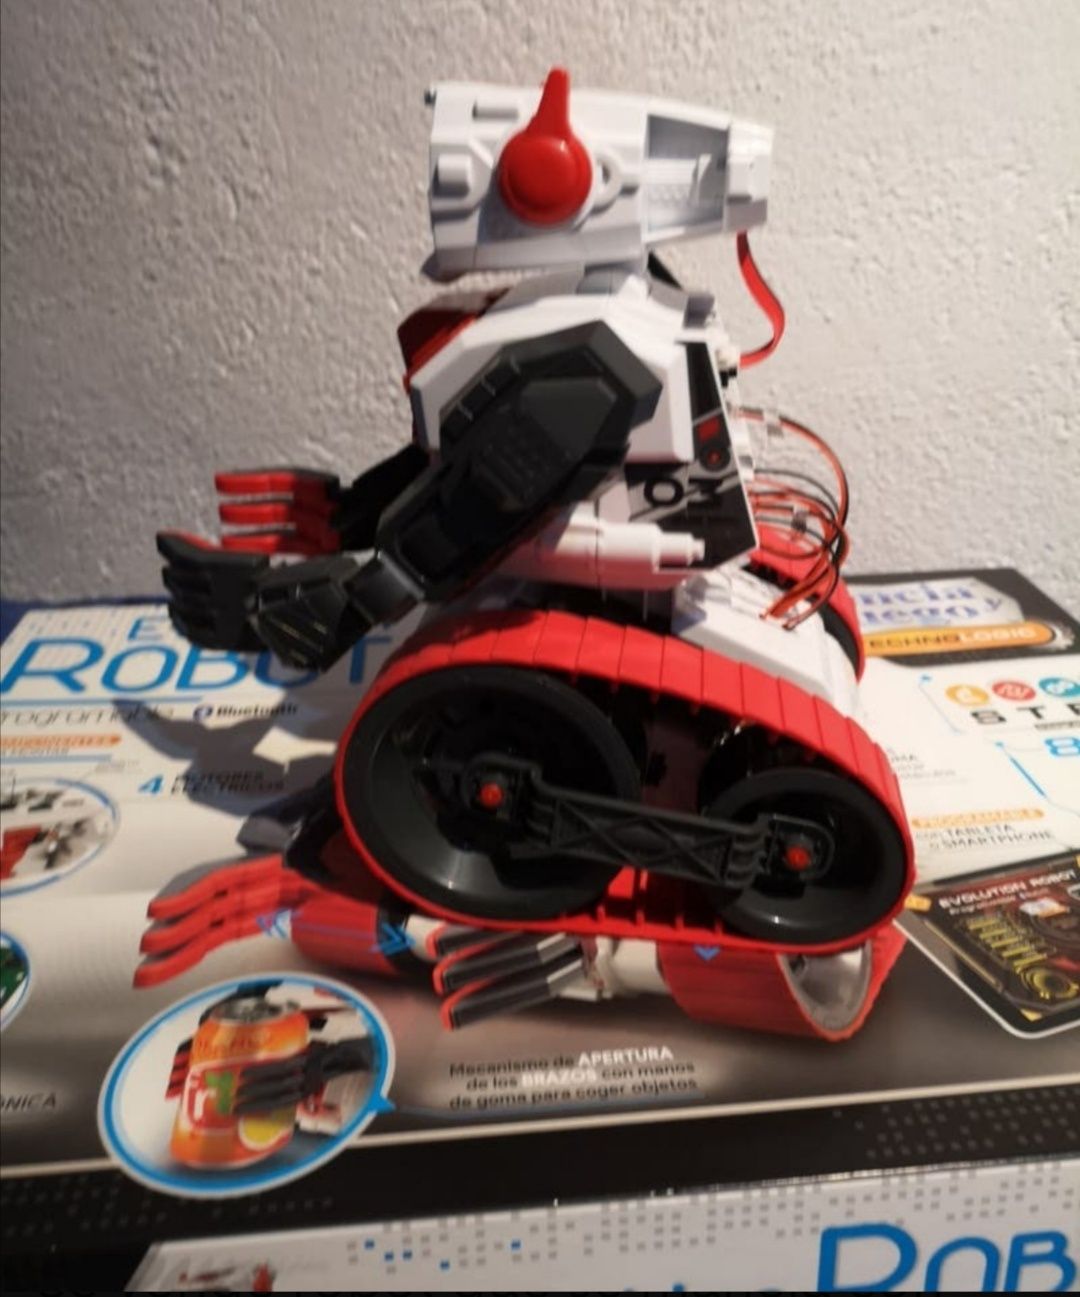 Evolución Robot Clementoni